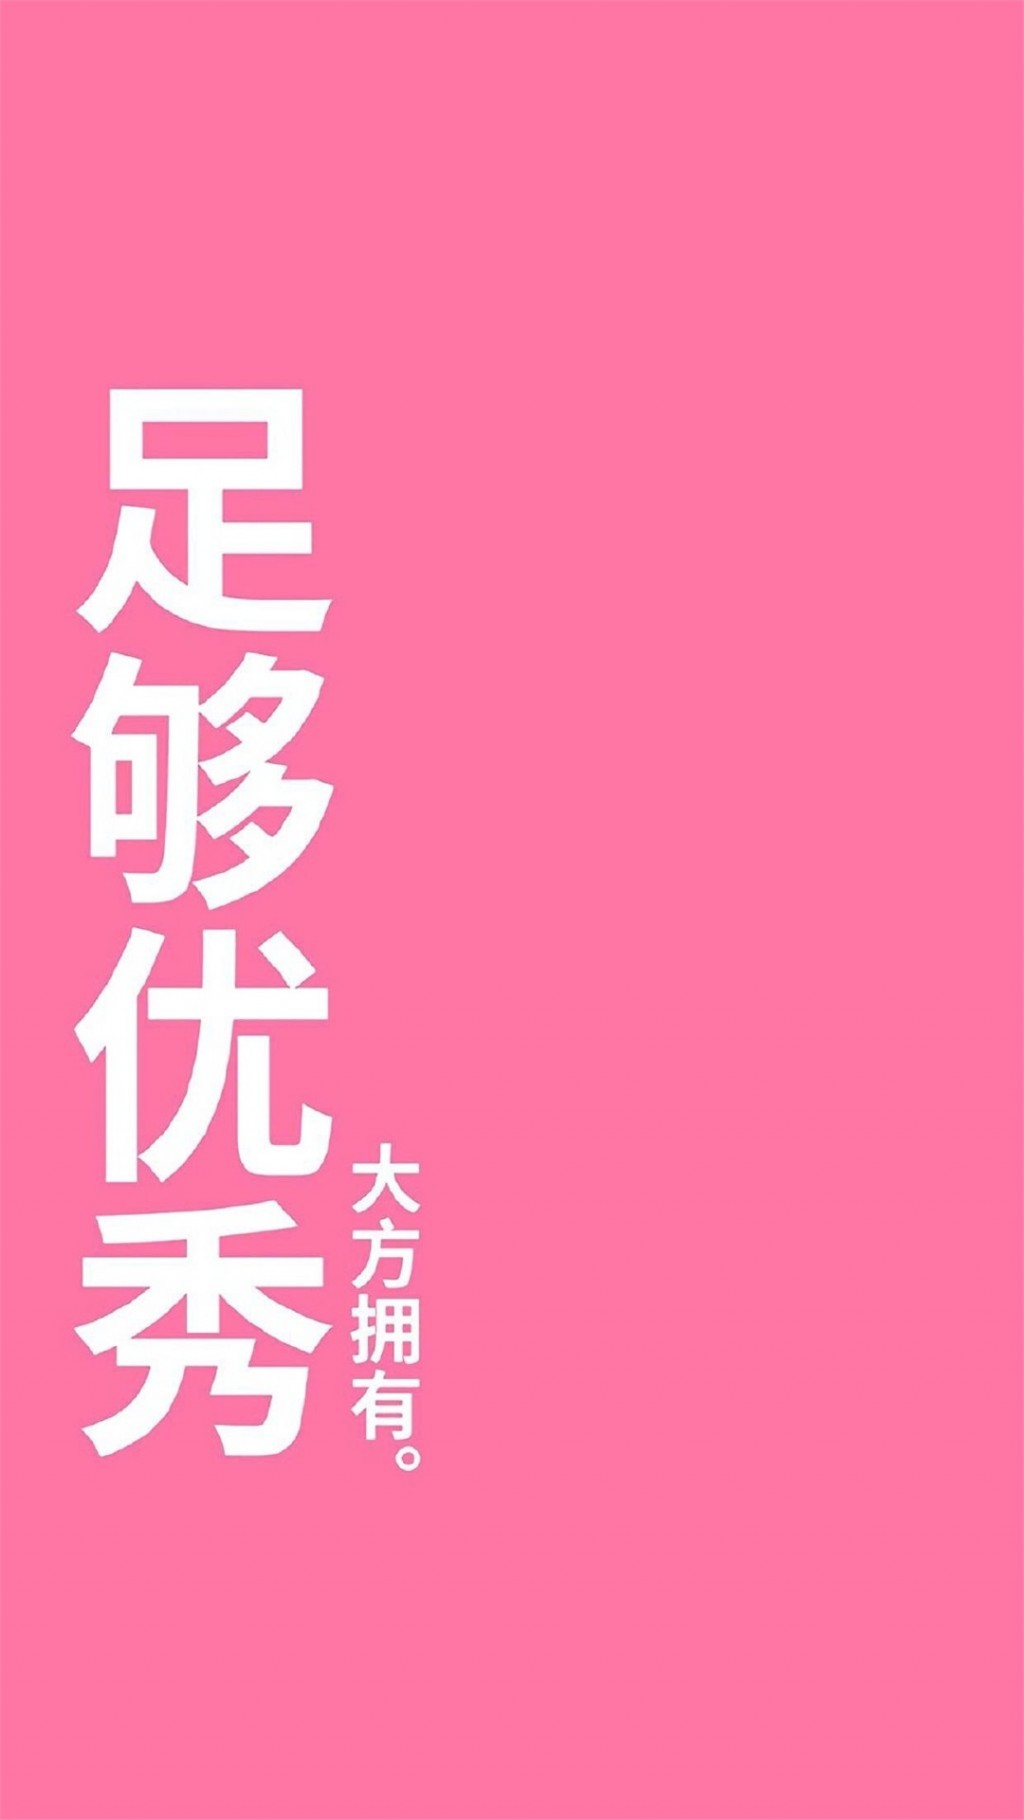 粉红纯色背景文字图片手机壁纸